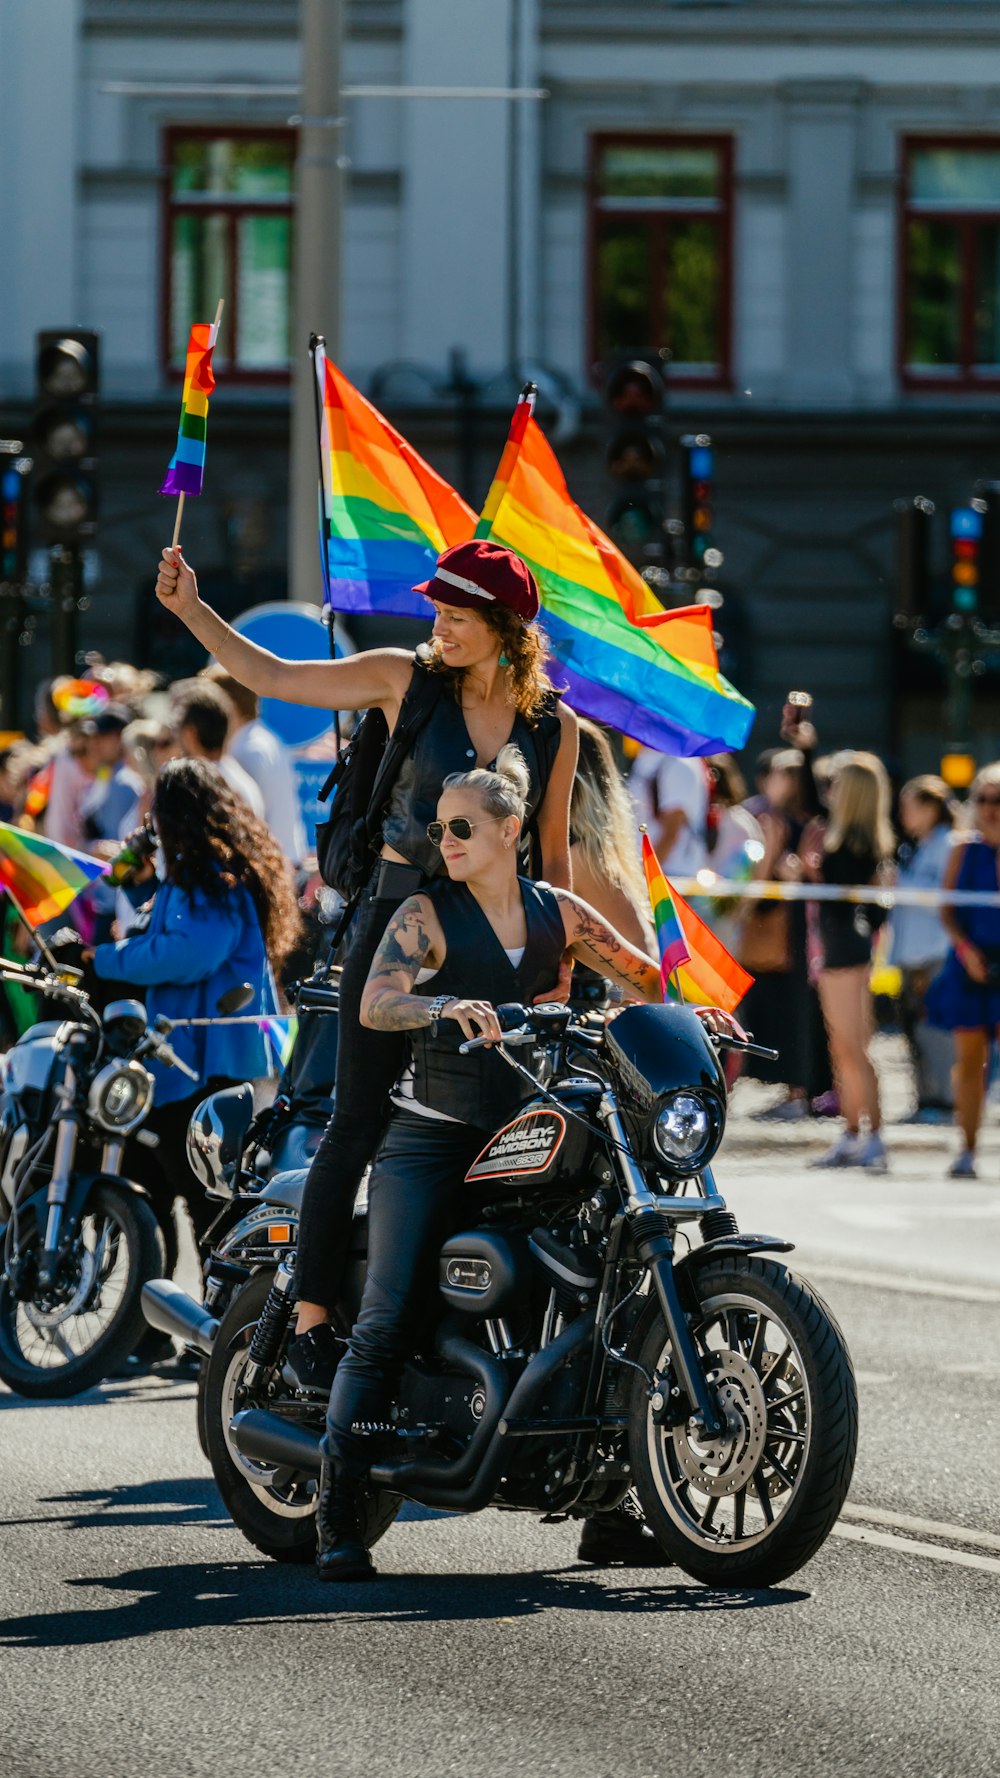 Una pareja de mujeres montando una motocicleta con banderas